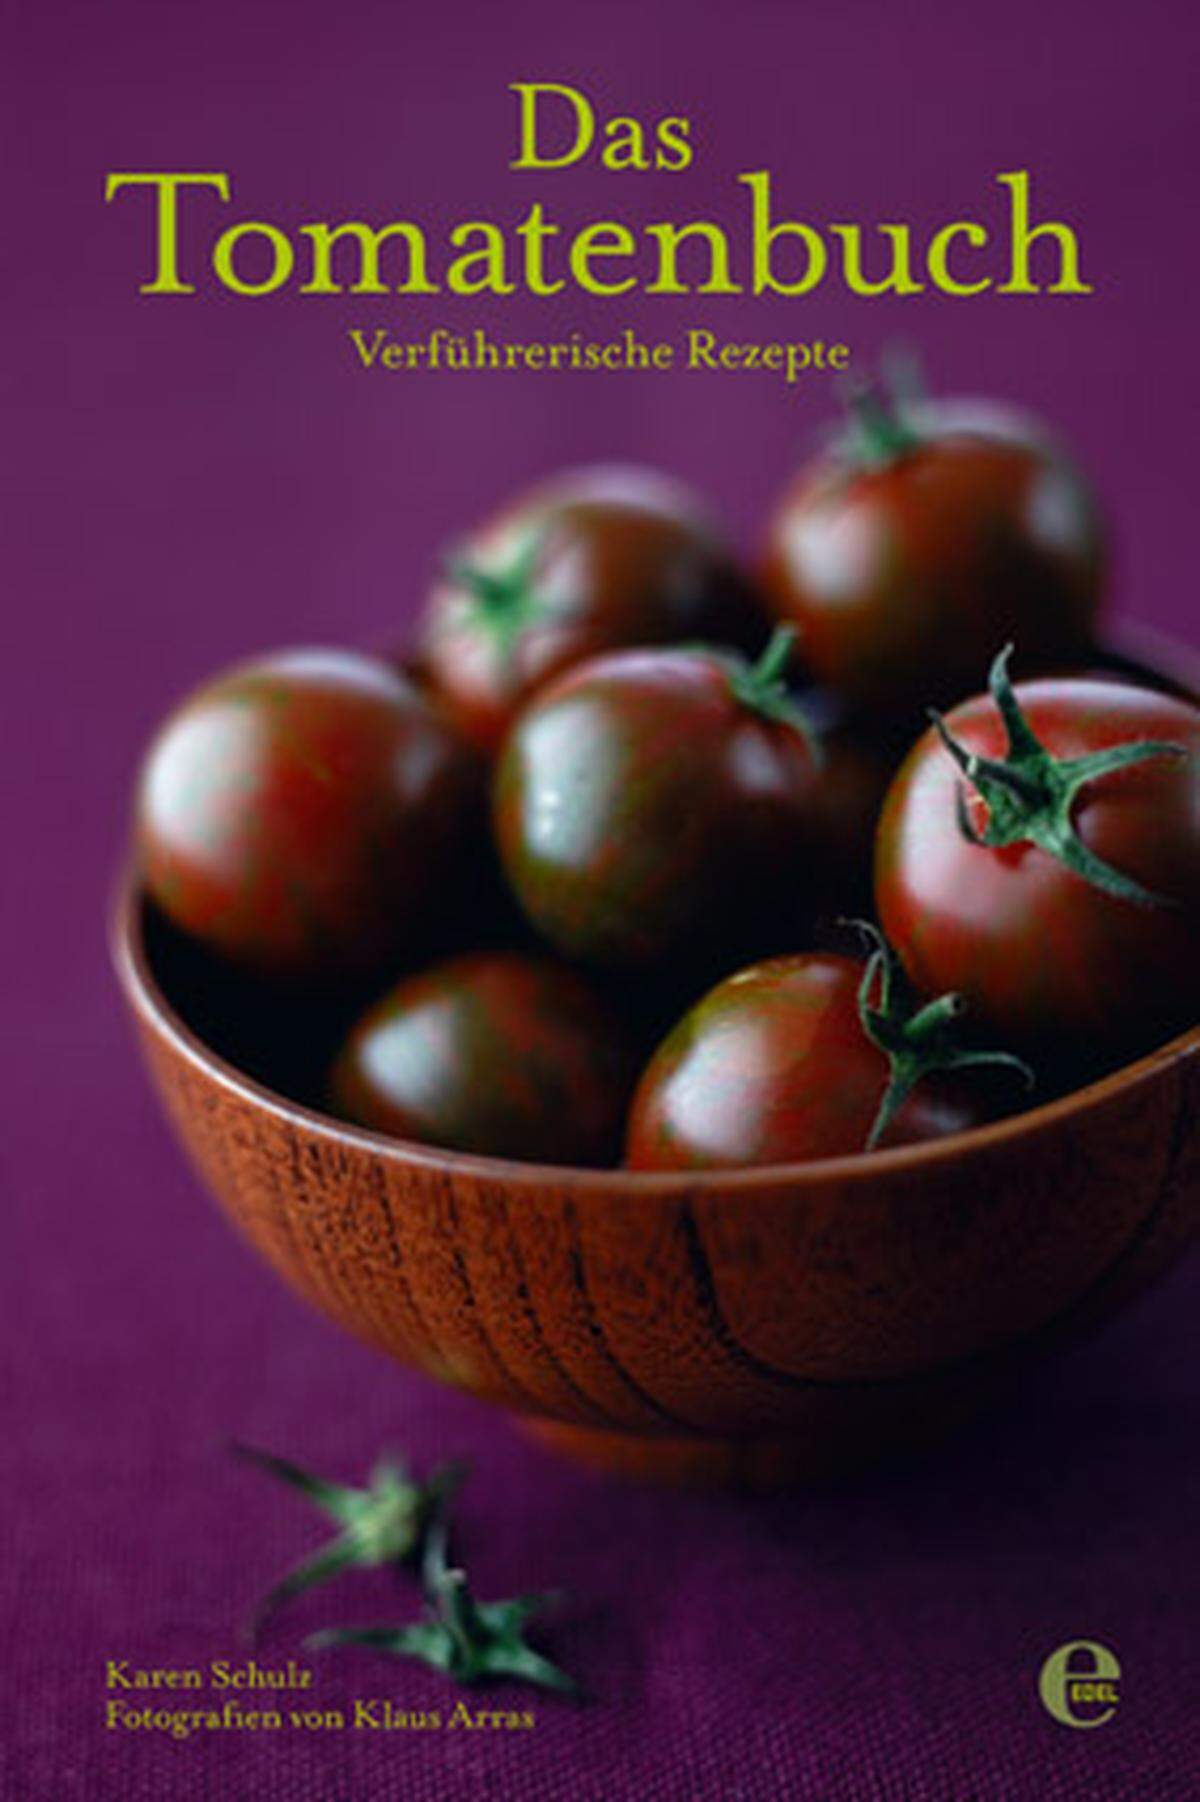 Das Tomatenbuch. Verführerische Rezepte. Karen Schulz und Klaus Arras (Fotos) Edel 160 Seiten, 25,70 Euro.